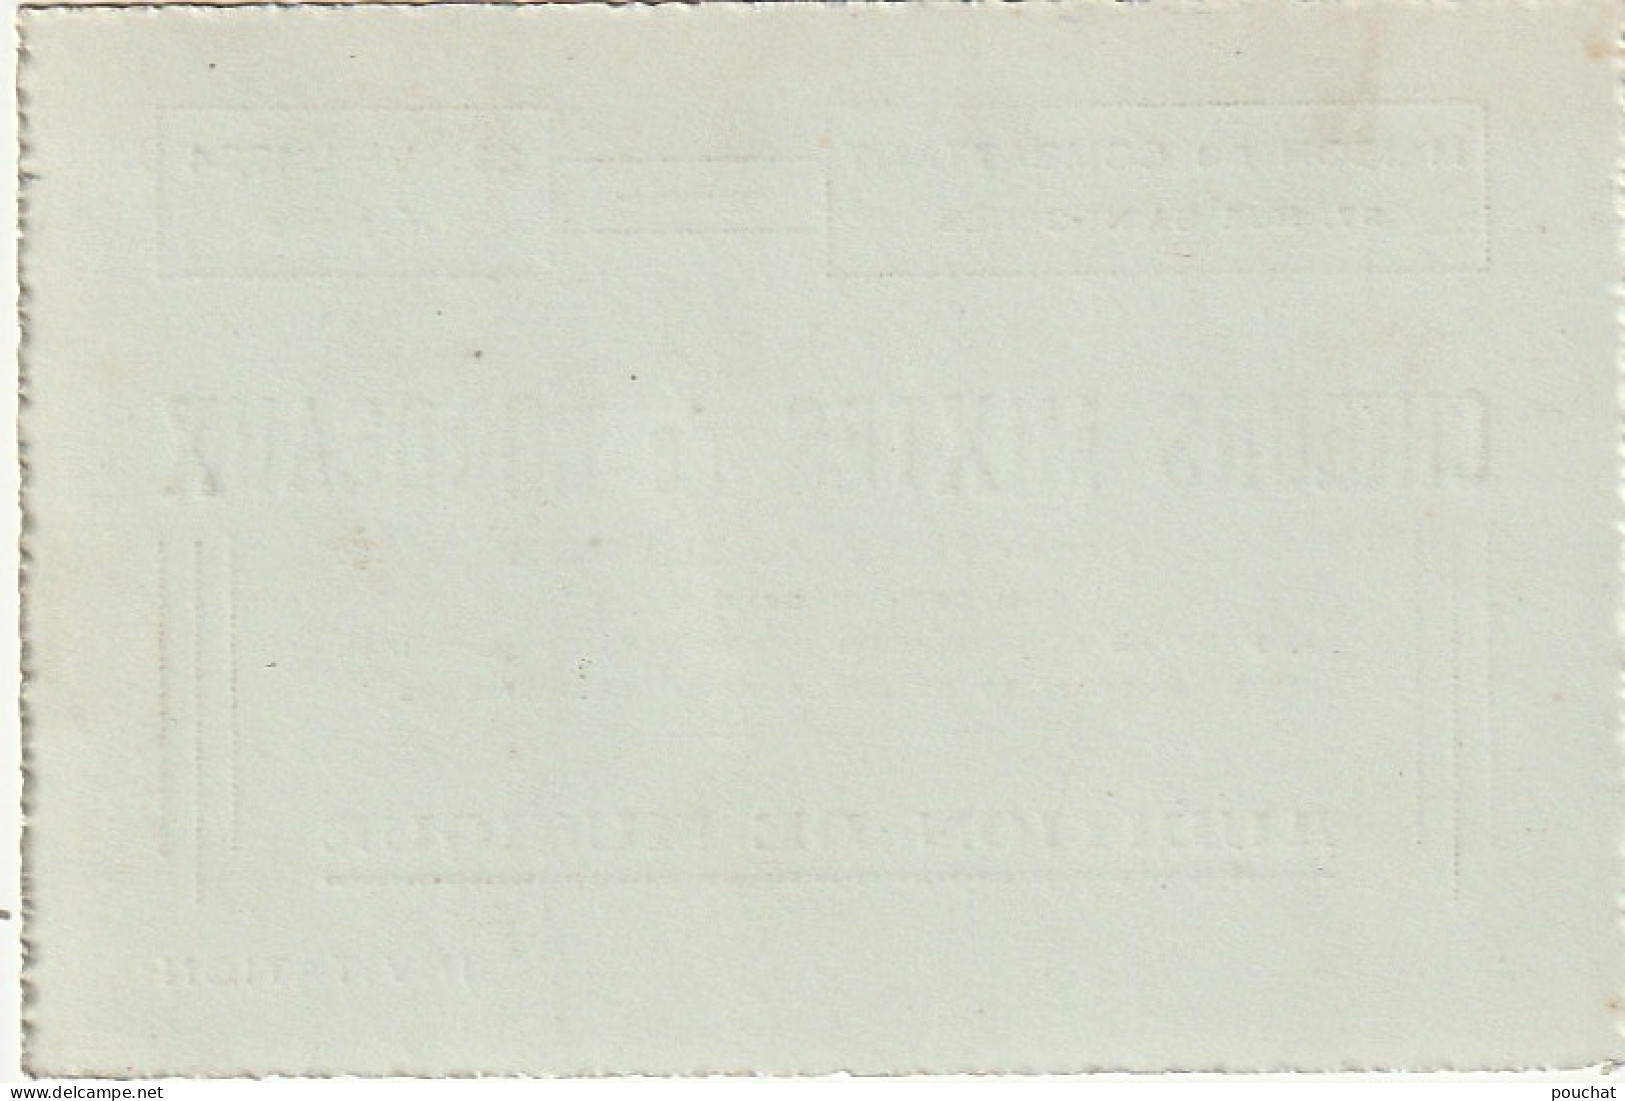 NE 8-(33) CARTE INVITATION - CHOEURS MIXTES DE BORDEAUX 29 AVRIL 1934 - AUDITION DE MUSIQUE - 2 SCANS - Visitekaartjes